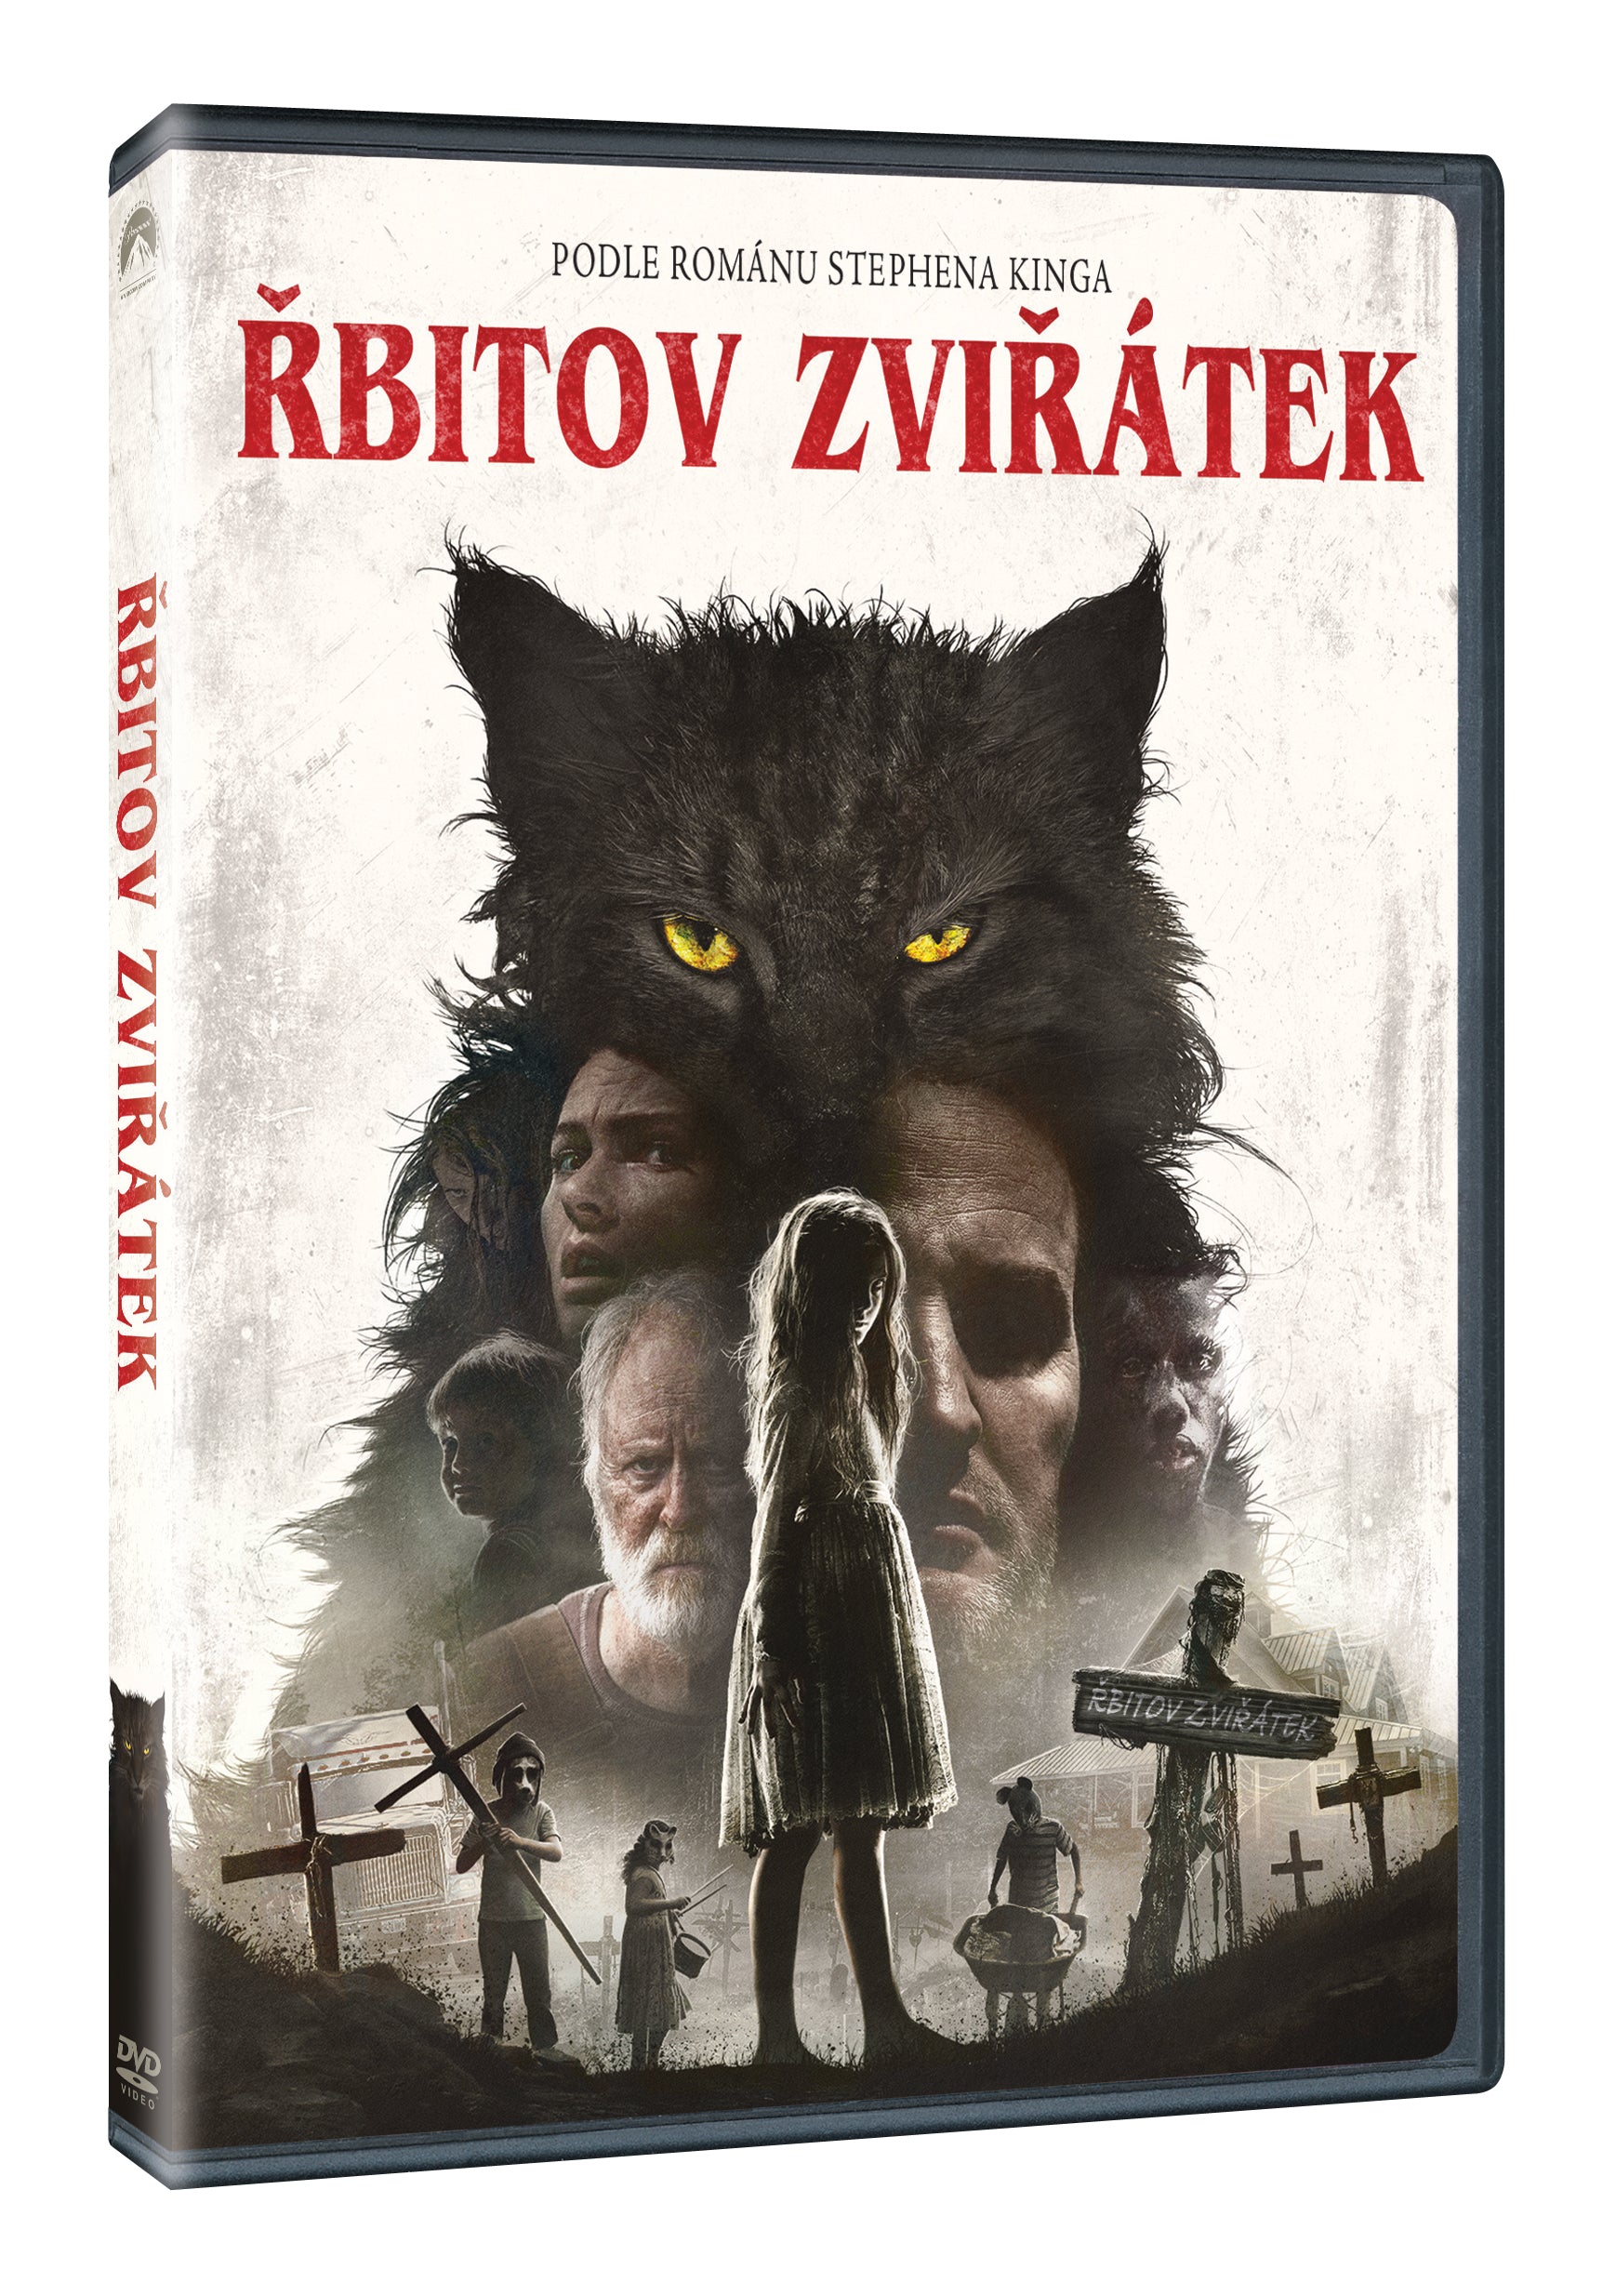 Rbitov zviratek DVD / Tierfriedhof